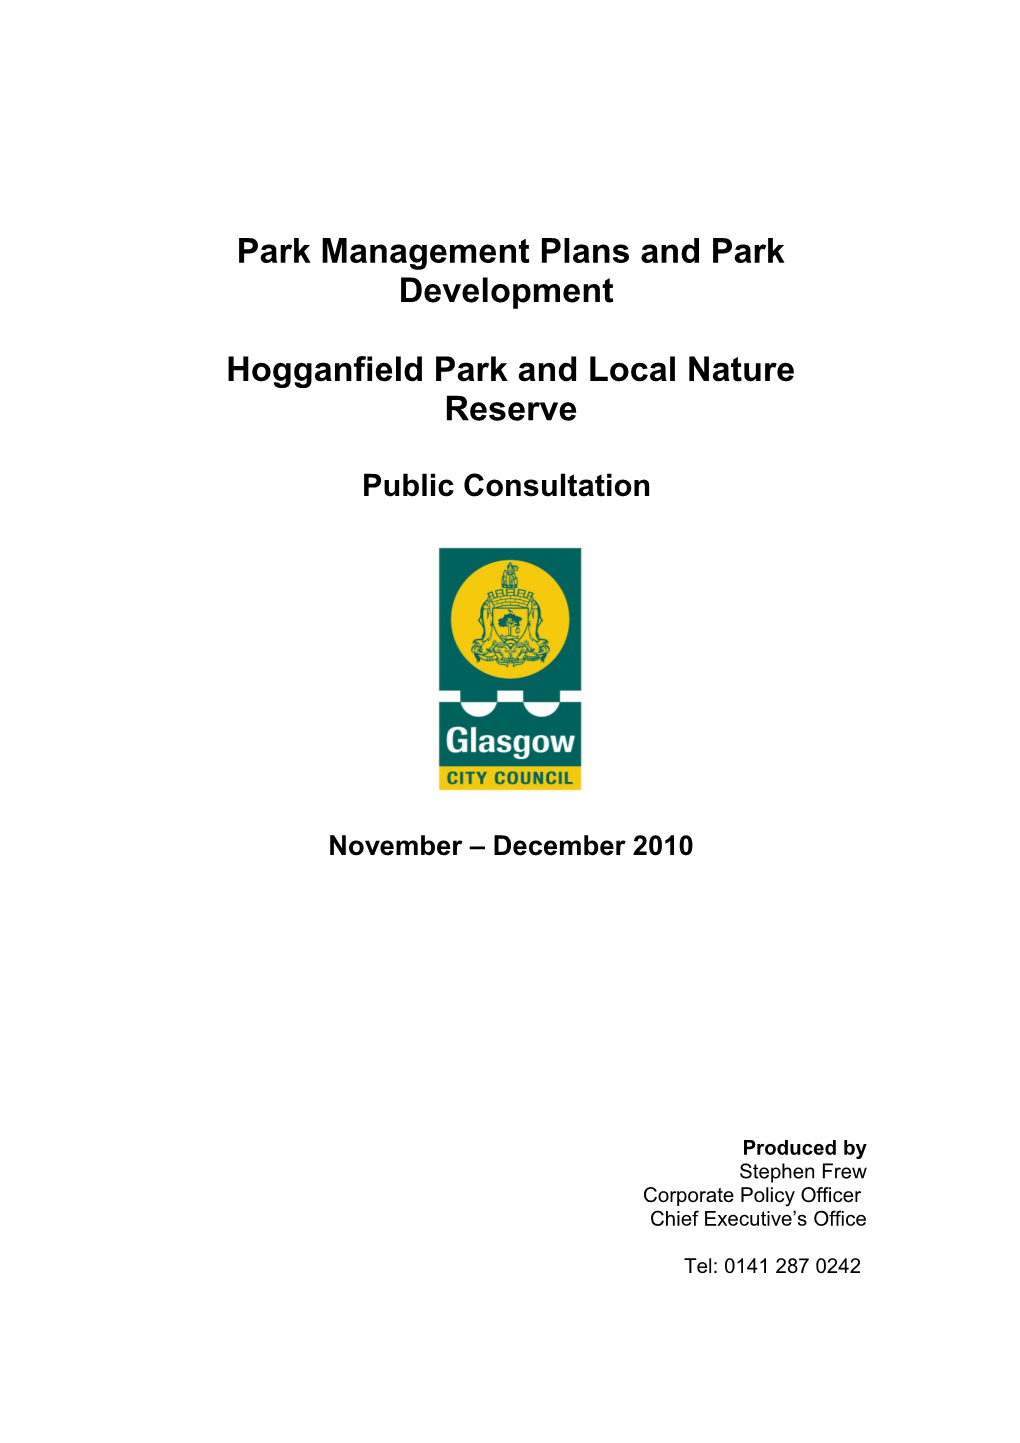 Park Management Plans and Park Development